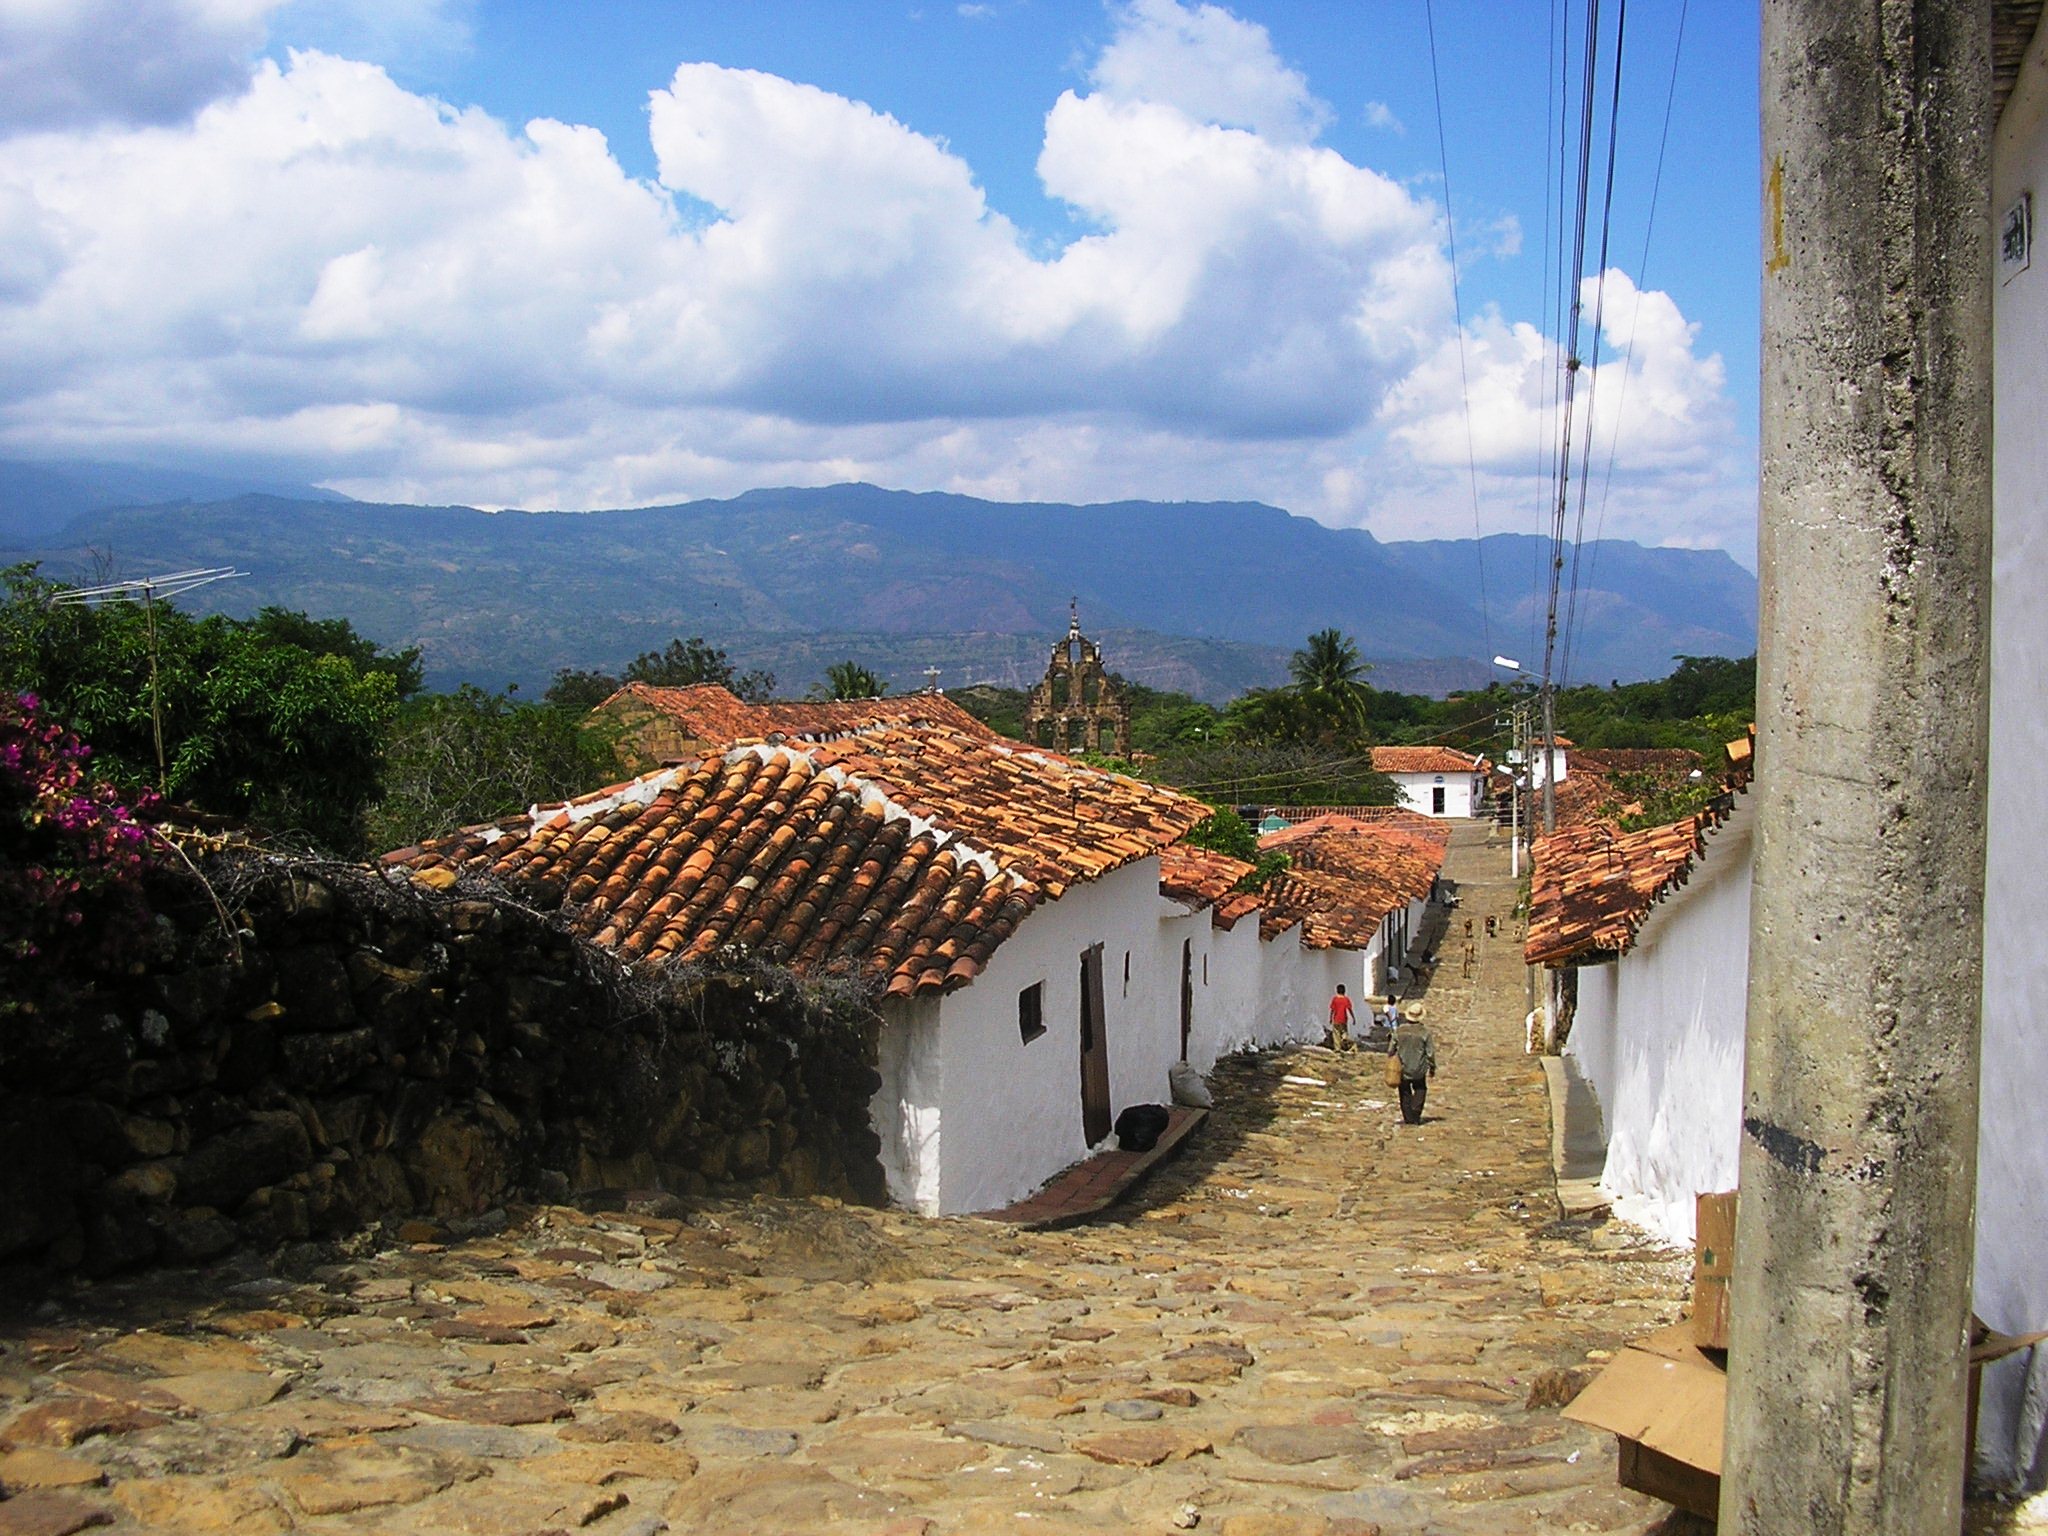 Guane (village)